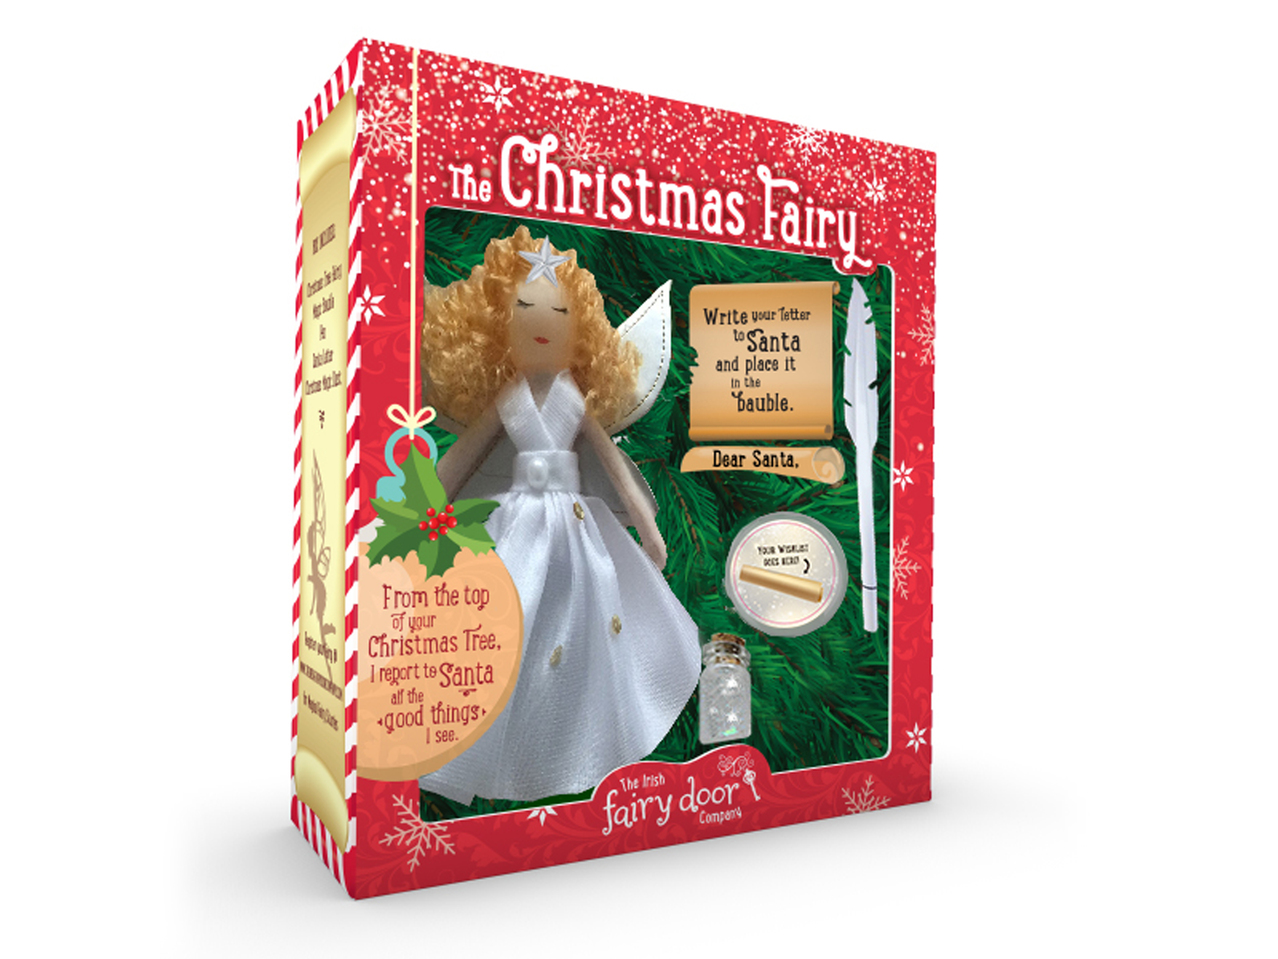 IRISH FAIRY DOOR COMPANY Christmas Fairy